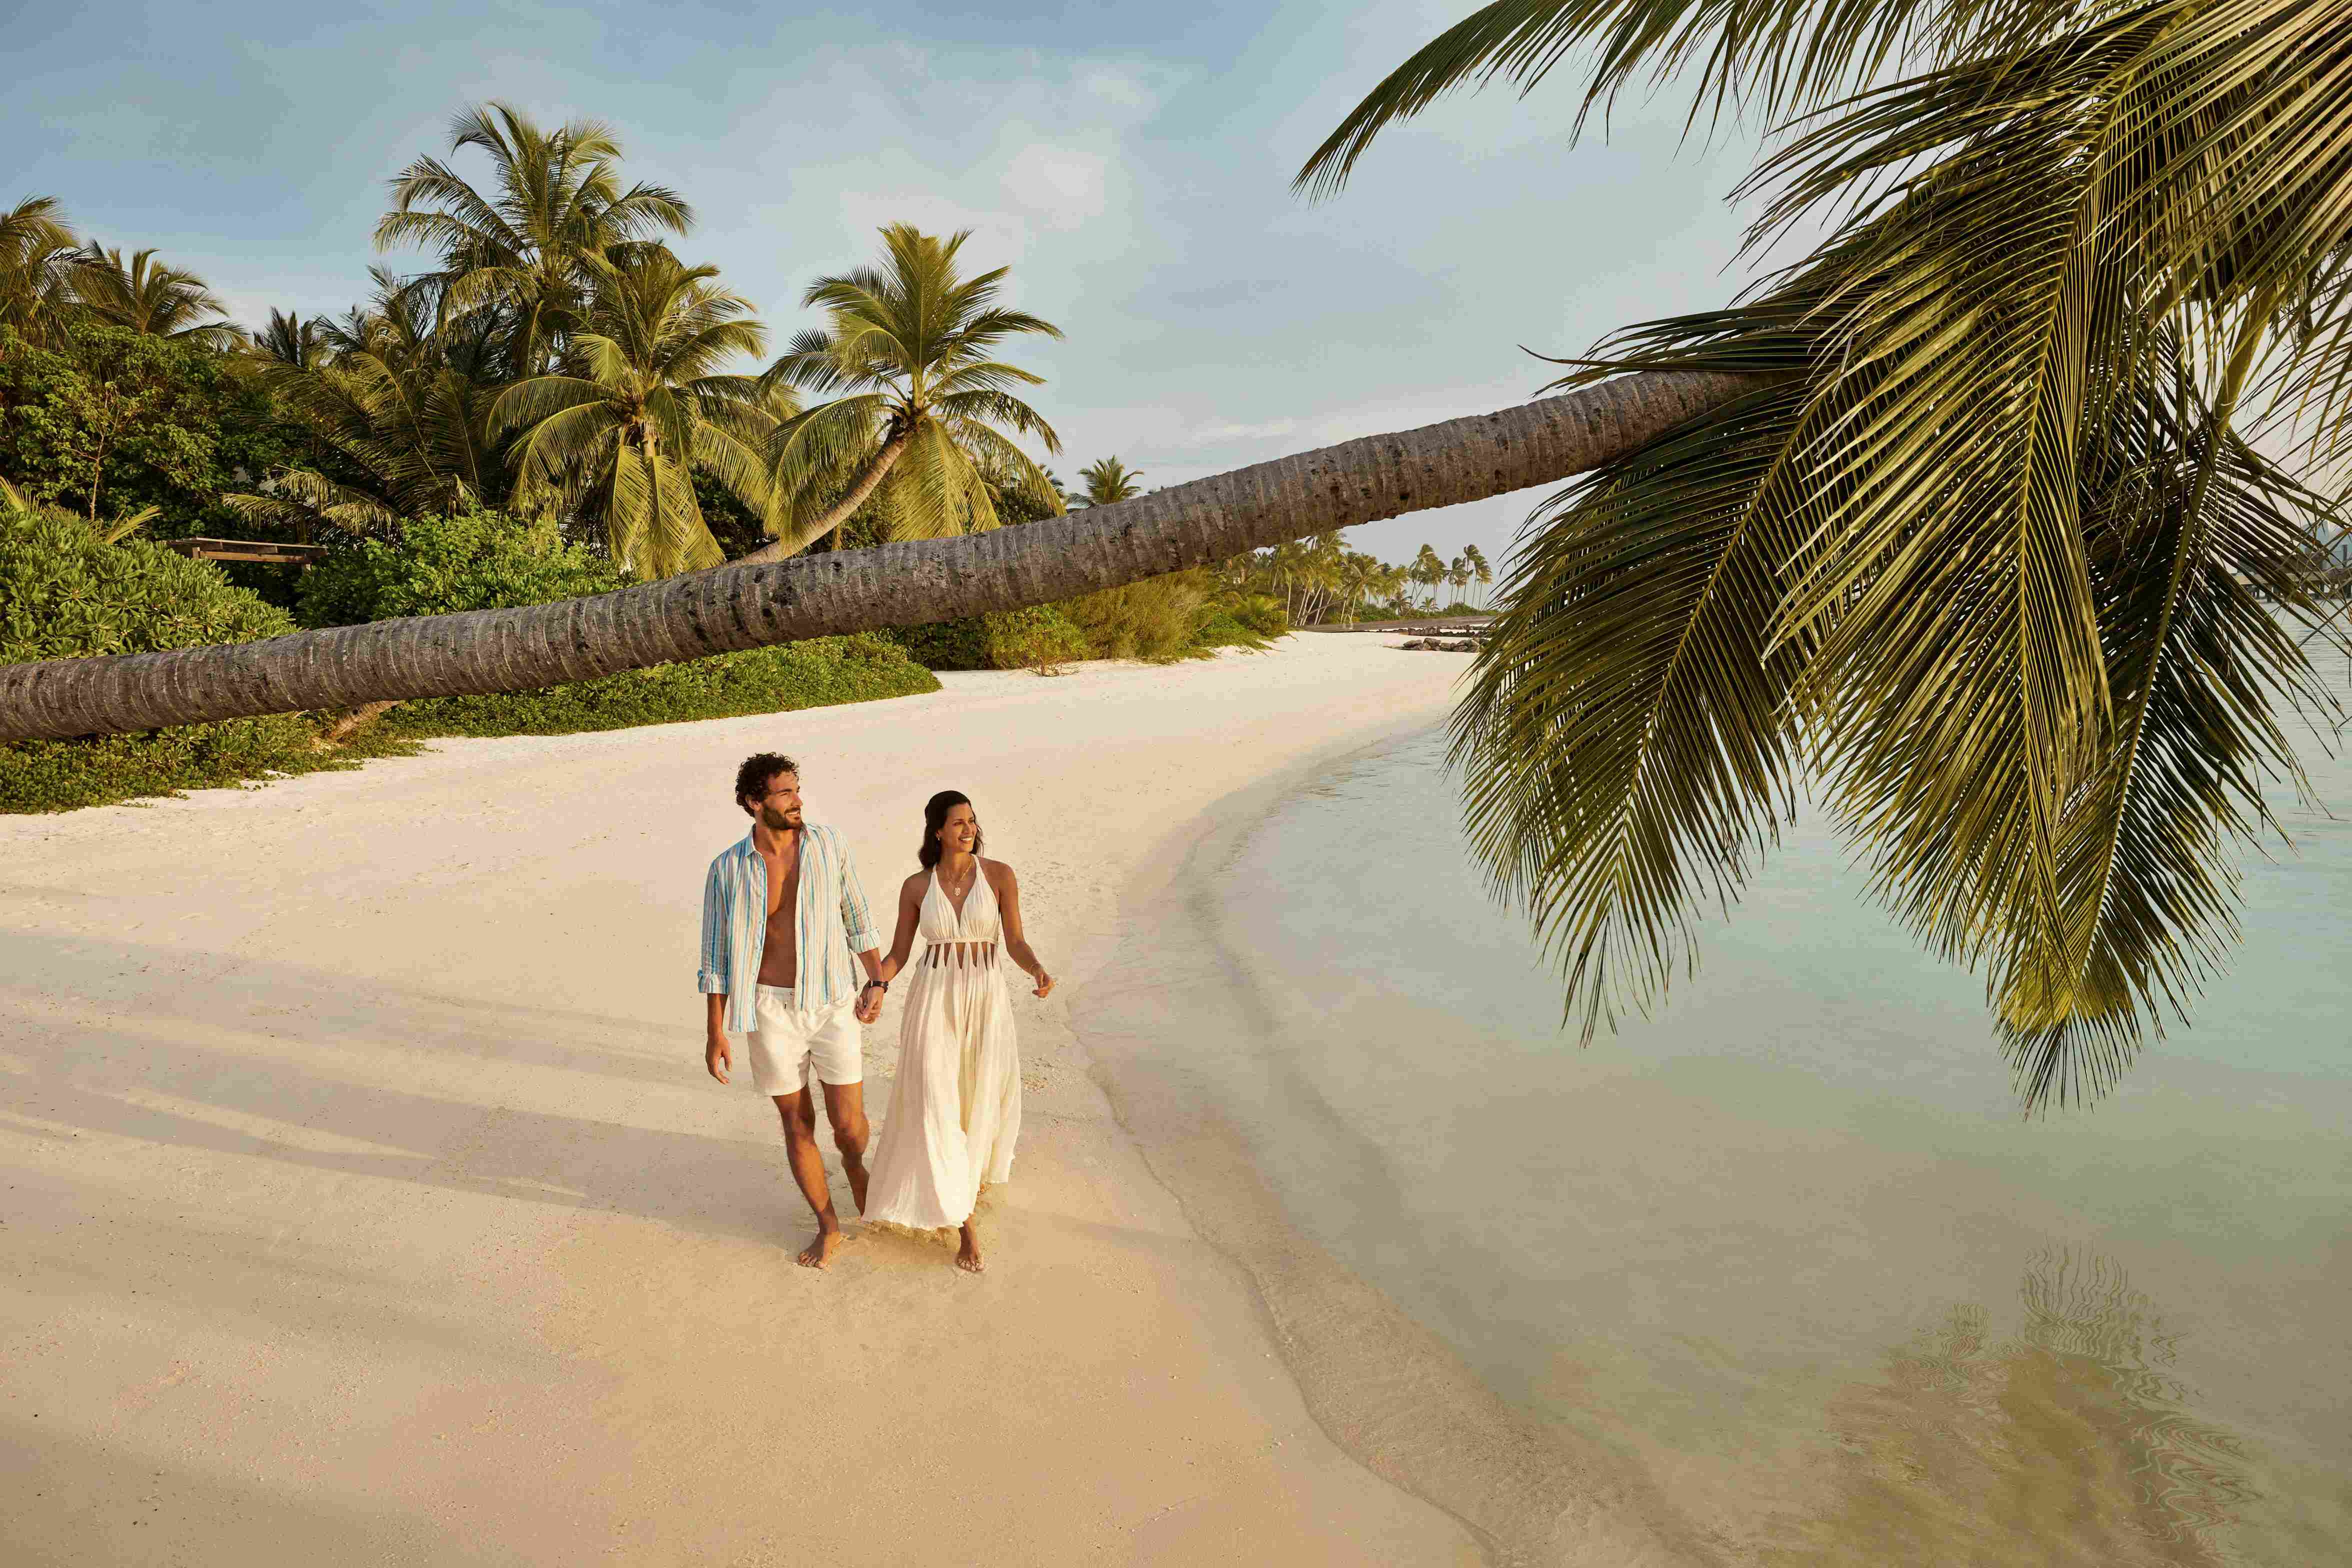 Easter Extravaganza: Jumeirah Maldives Olhahali Island Invites Families to an Idyllic Island Getaway